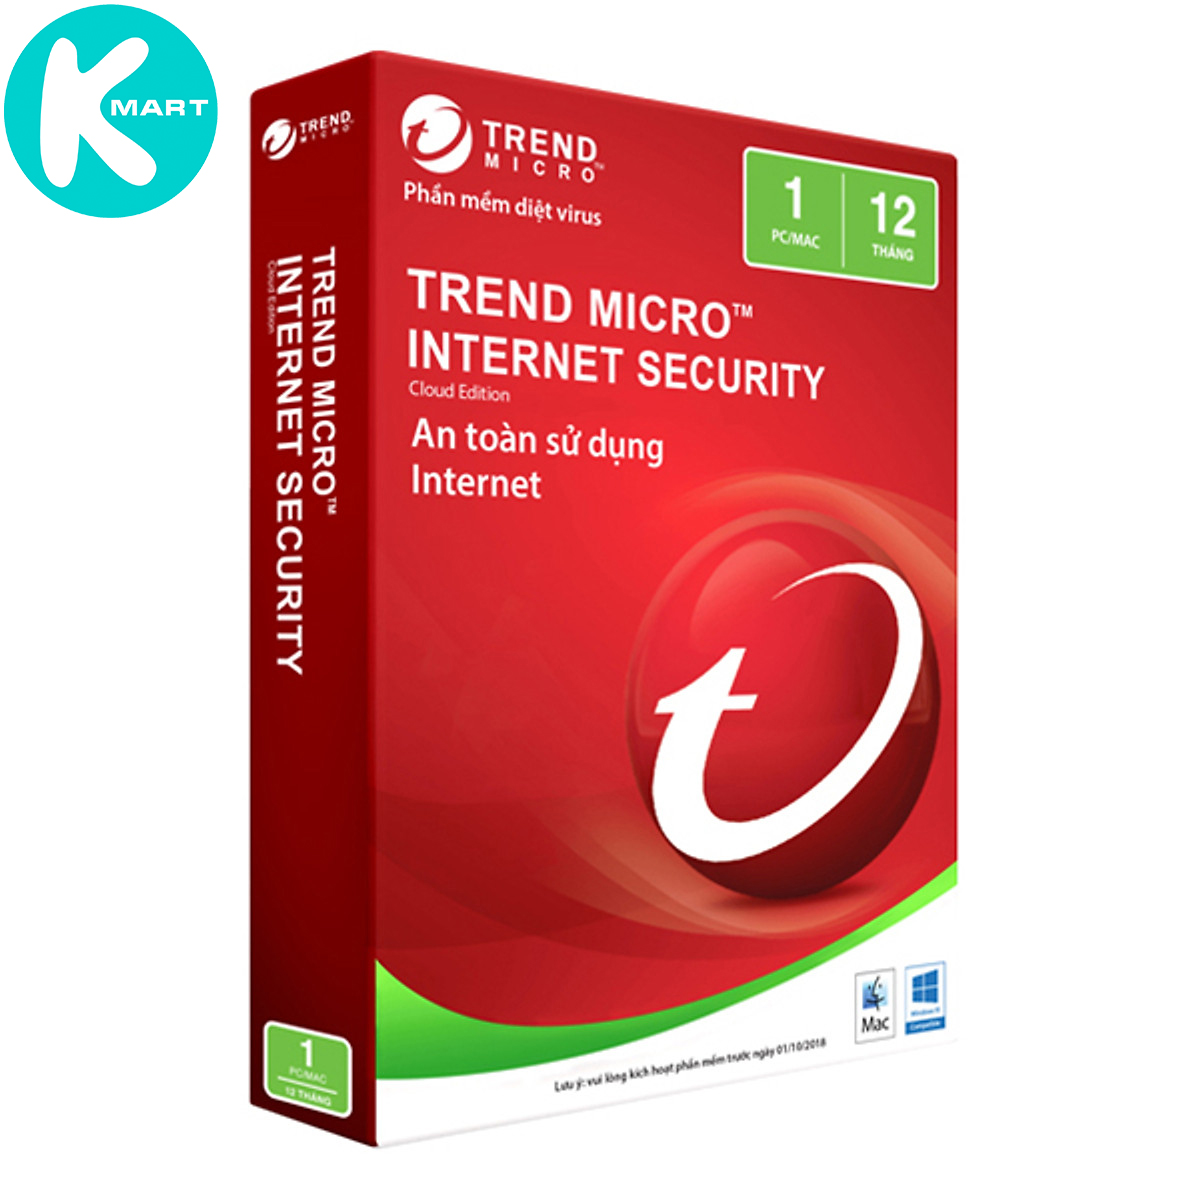 Phần Mềm Diệt Virus Trend Micro Internet Security Bản Quyền 1PC / 3PC 12 Tháng - Hàng Chính Hãng